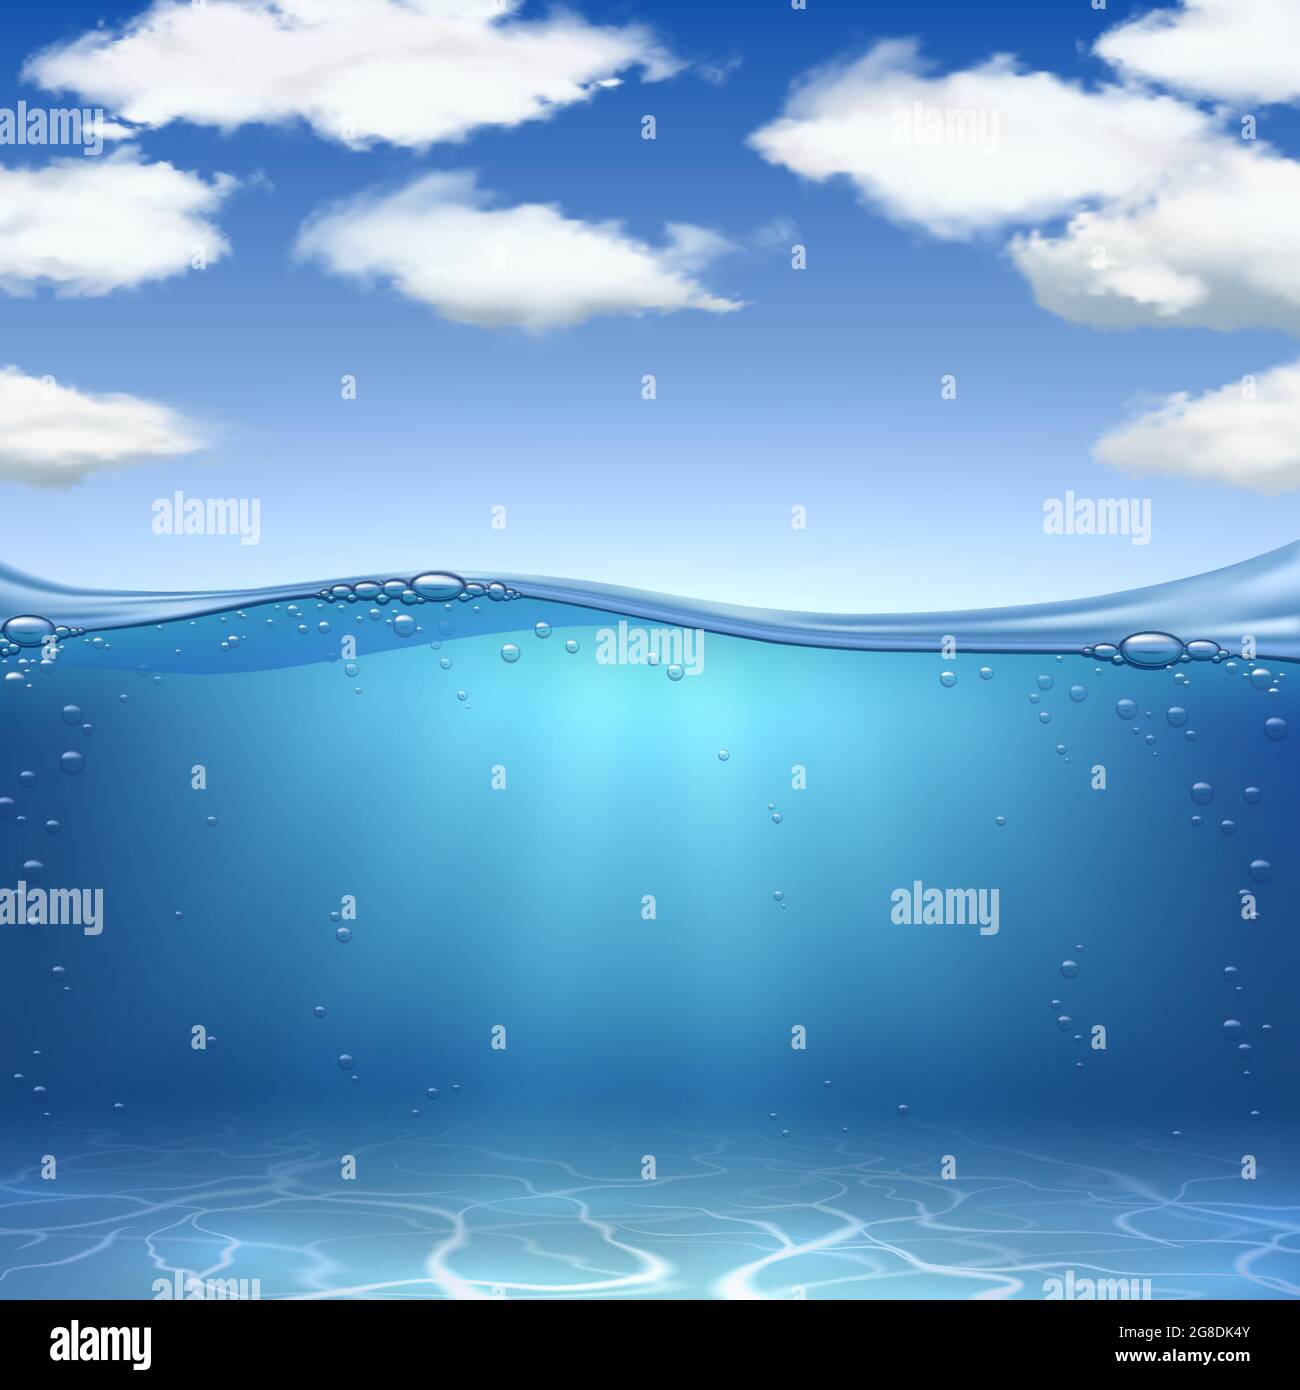 Vagues de mer et fond. Réaliste océan sable sous-marin, eau avec bulles d'air et ciel bleu avec nuages. Arrière-plan vectoriel de paysage marin Illustration de Vecteur